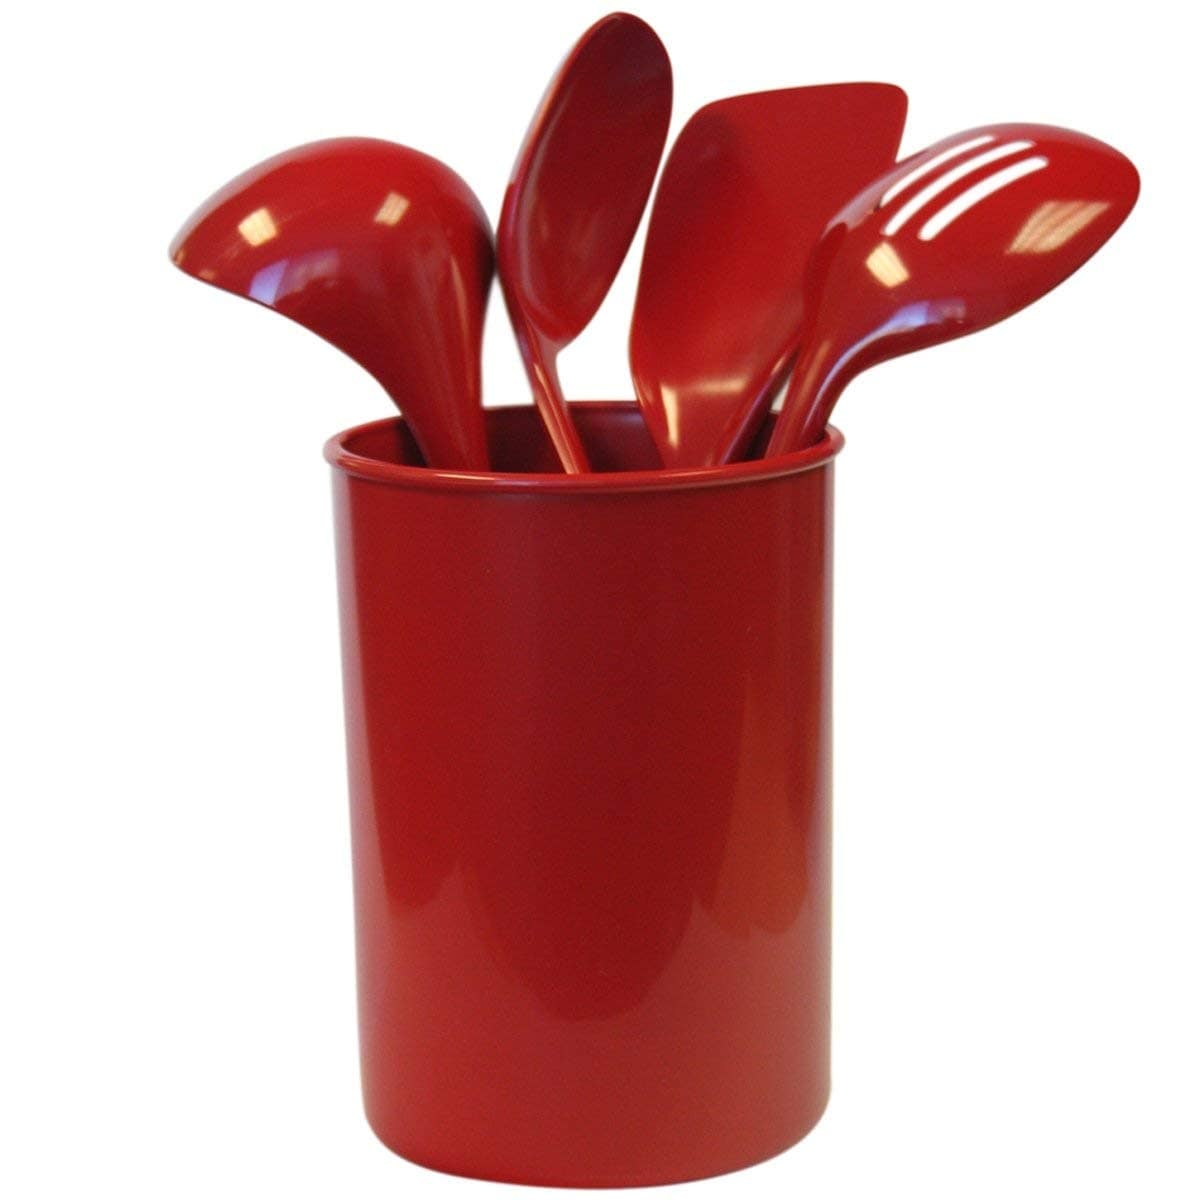 red utensil holder target